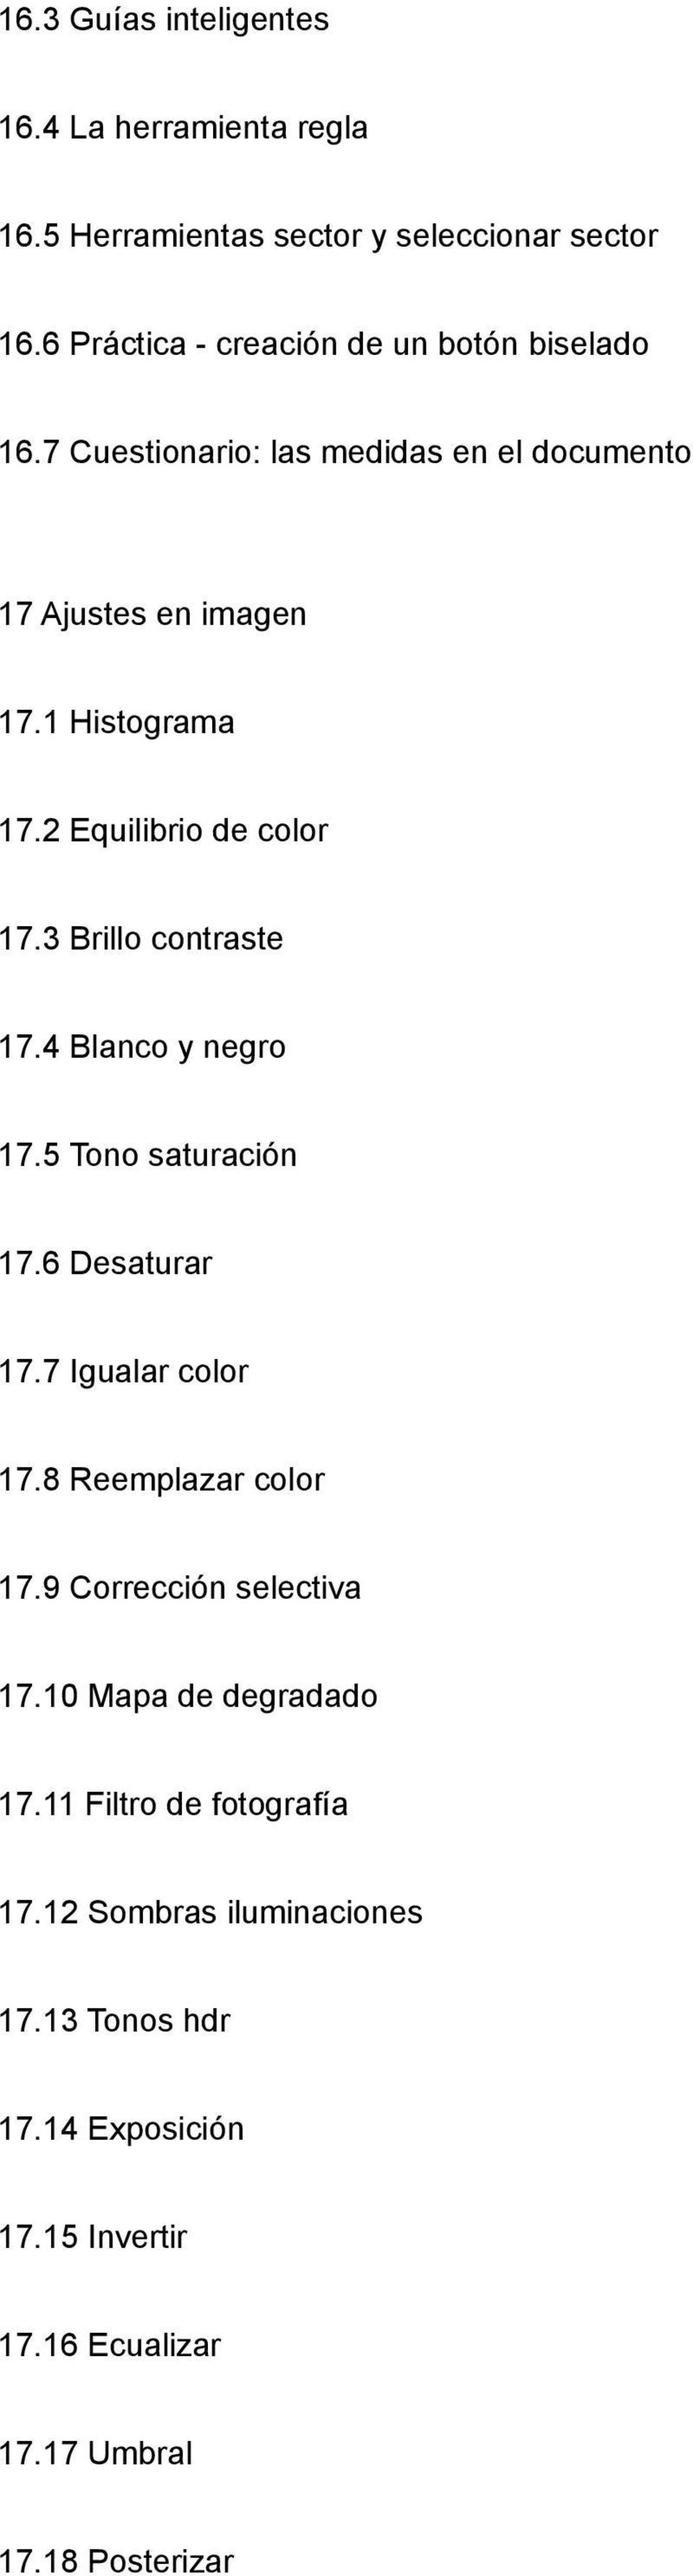 2 Equilibrio de color 17.3 Brillo contraste 17.4 Blanco y negro 17.5 Tono saturación 17.6 Desaturar 17.7 Igualar color 17.